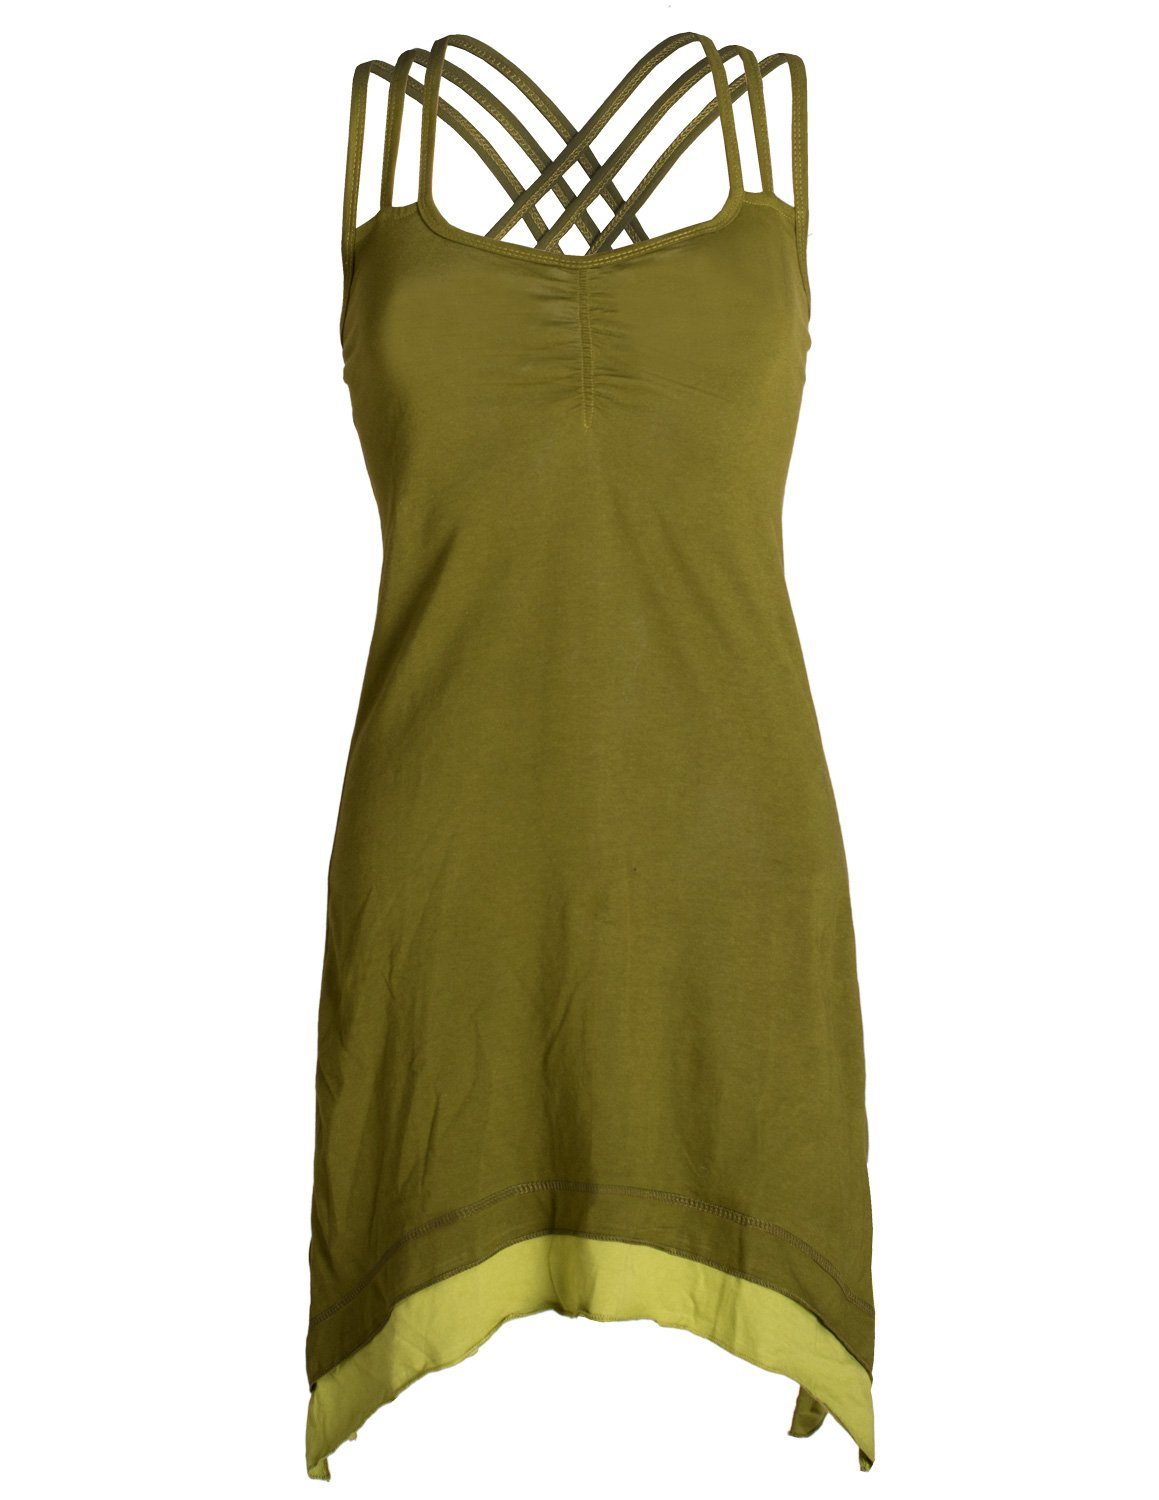 Vishes Sommerkleid »Lagenlook Trägerkleid Organic Cotton mit Zipfeln«  Elfen, Hippie, Boho Style online kaufen | OTTO